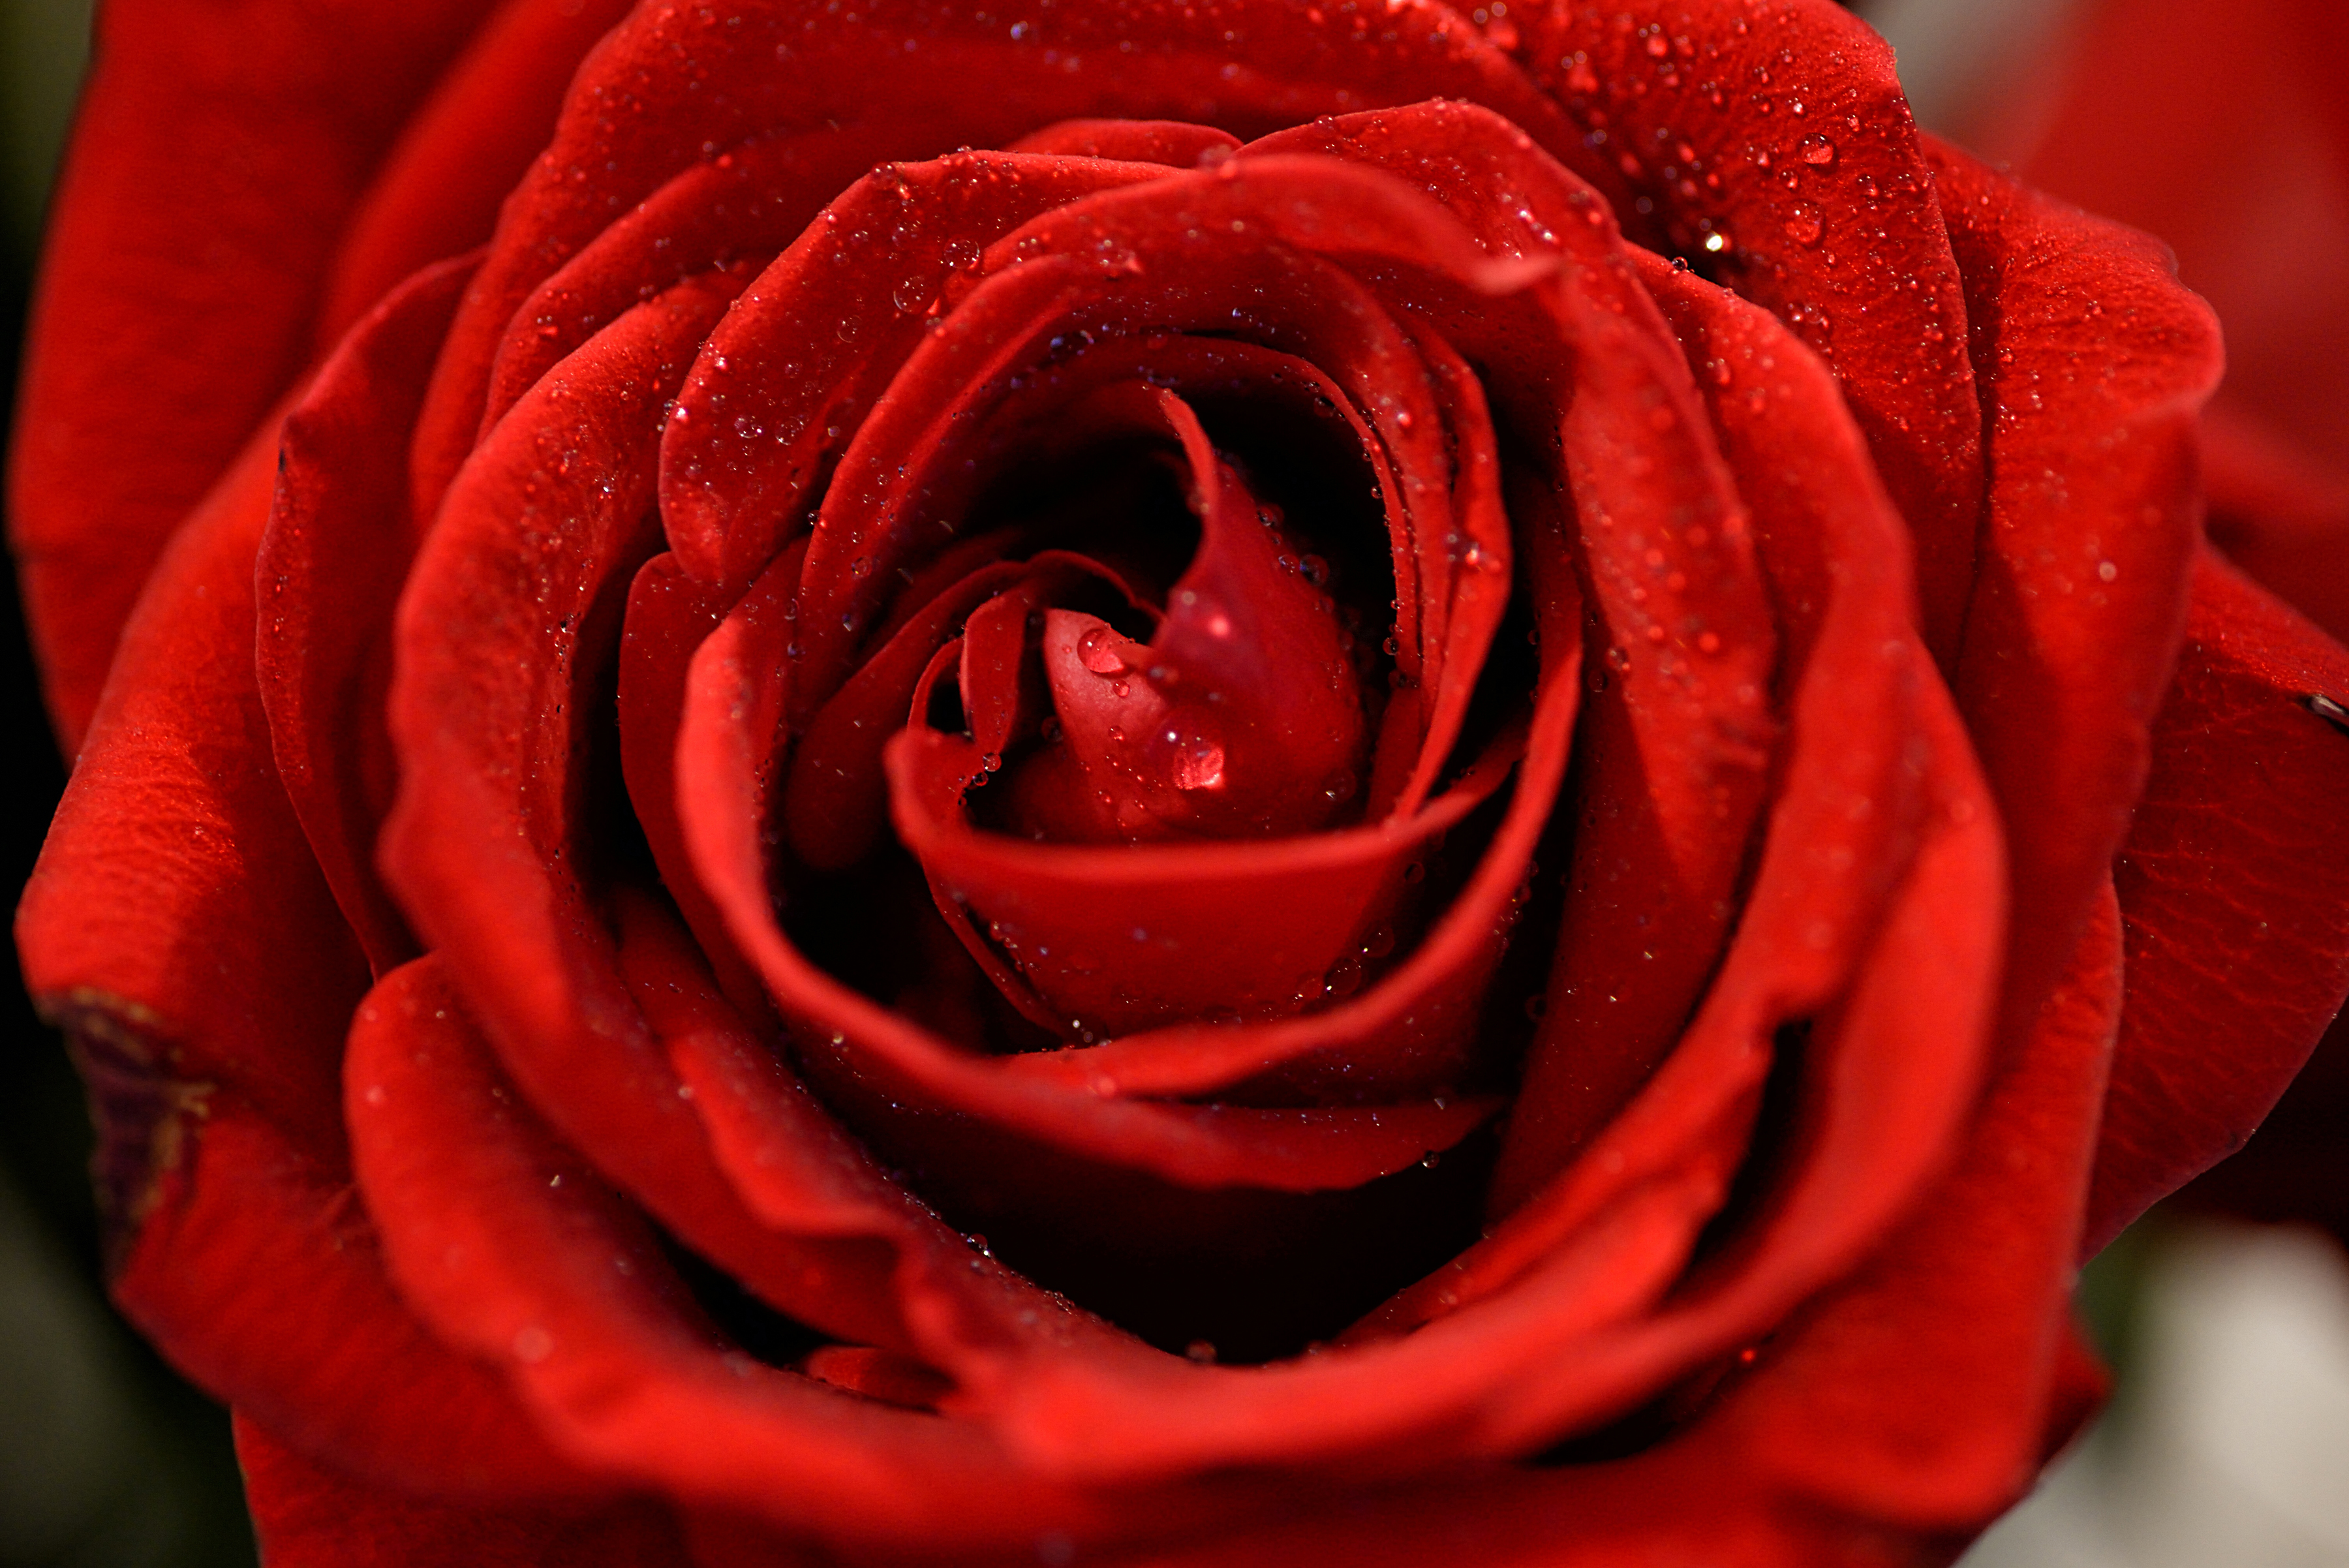 Видеть красные розы. Ред ред Роуз. Бутон красной розы. Красивые красные розы. Красивый красный.